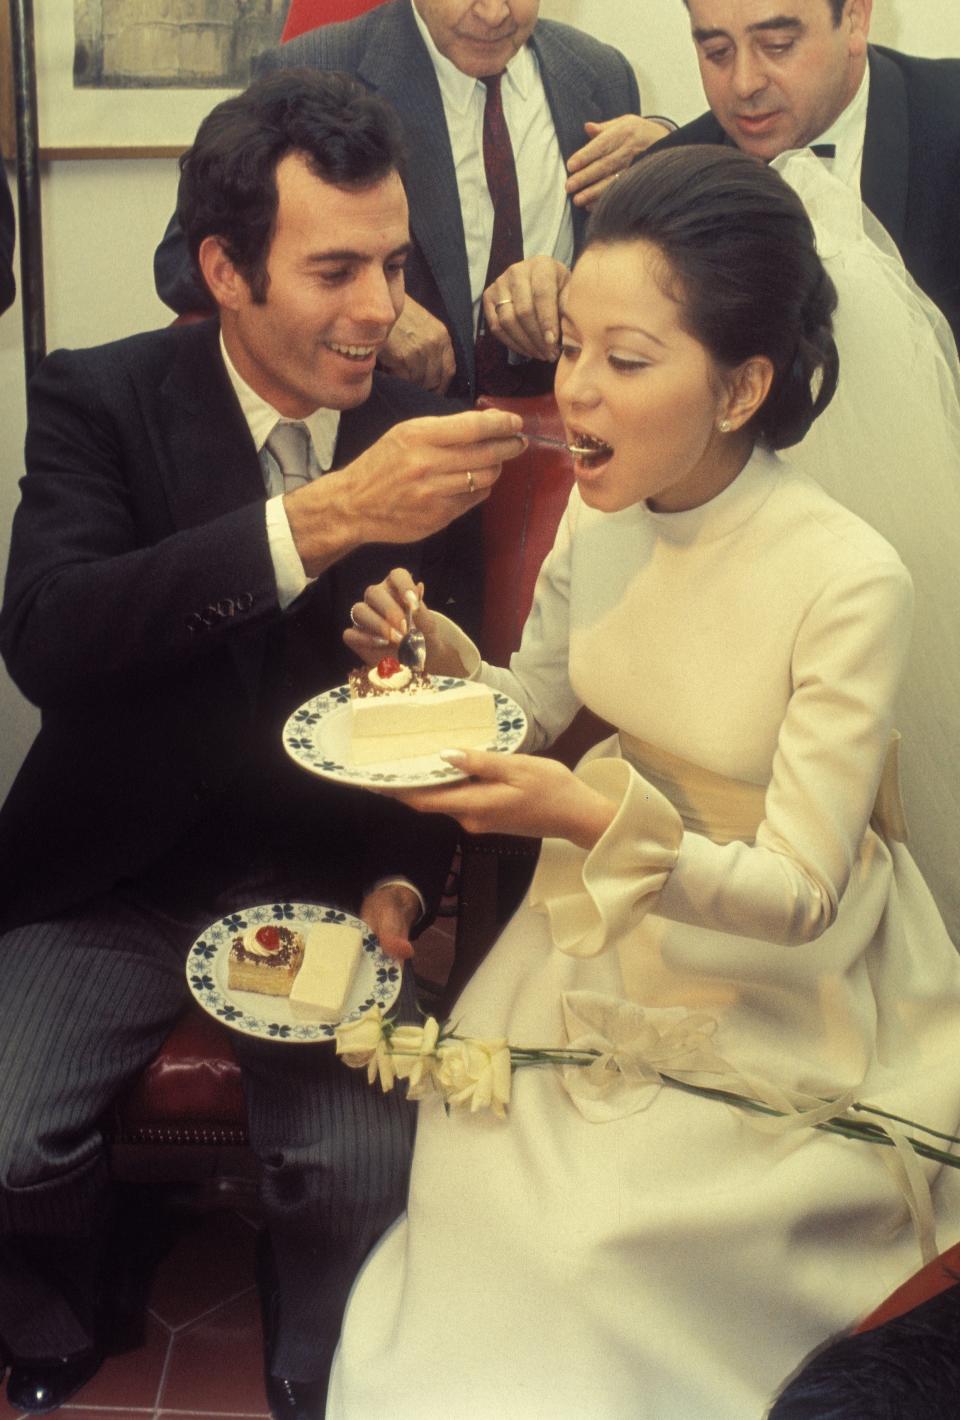 Julio Iglesias se casó en Illescas (Toledo) en 1971 con Isabel Preysler, a la que había conocido un año antes. Juntos formaron una extensa familia, pero su historia de amor acabó en divorcio en 1978. (Foto: Gianni Ferrari / Cover / Getty Images).